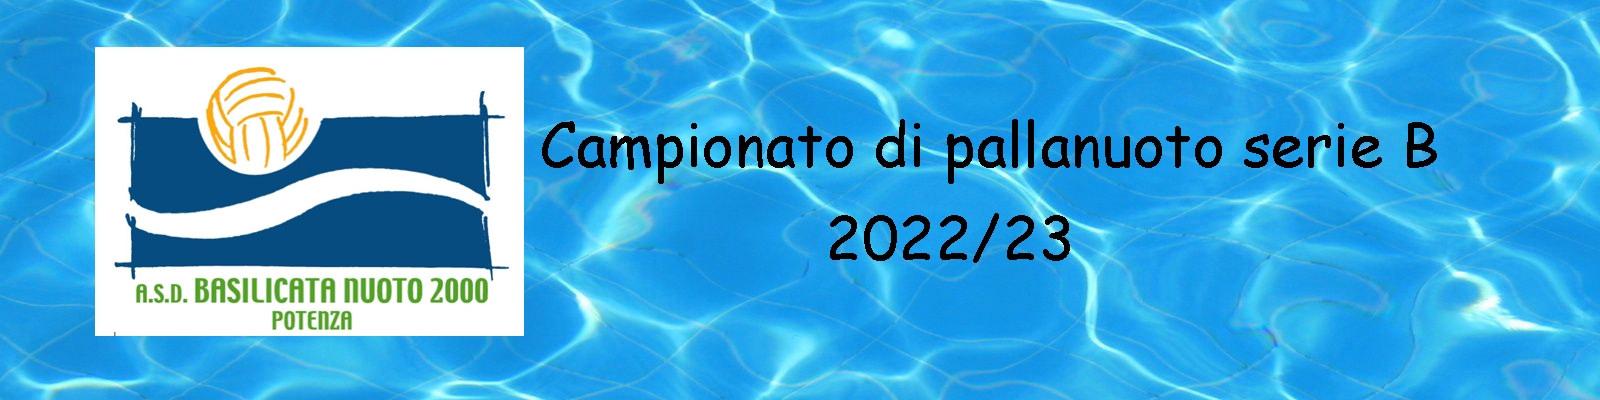 Basilicata Nuoto 2000 anno 2022-23